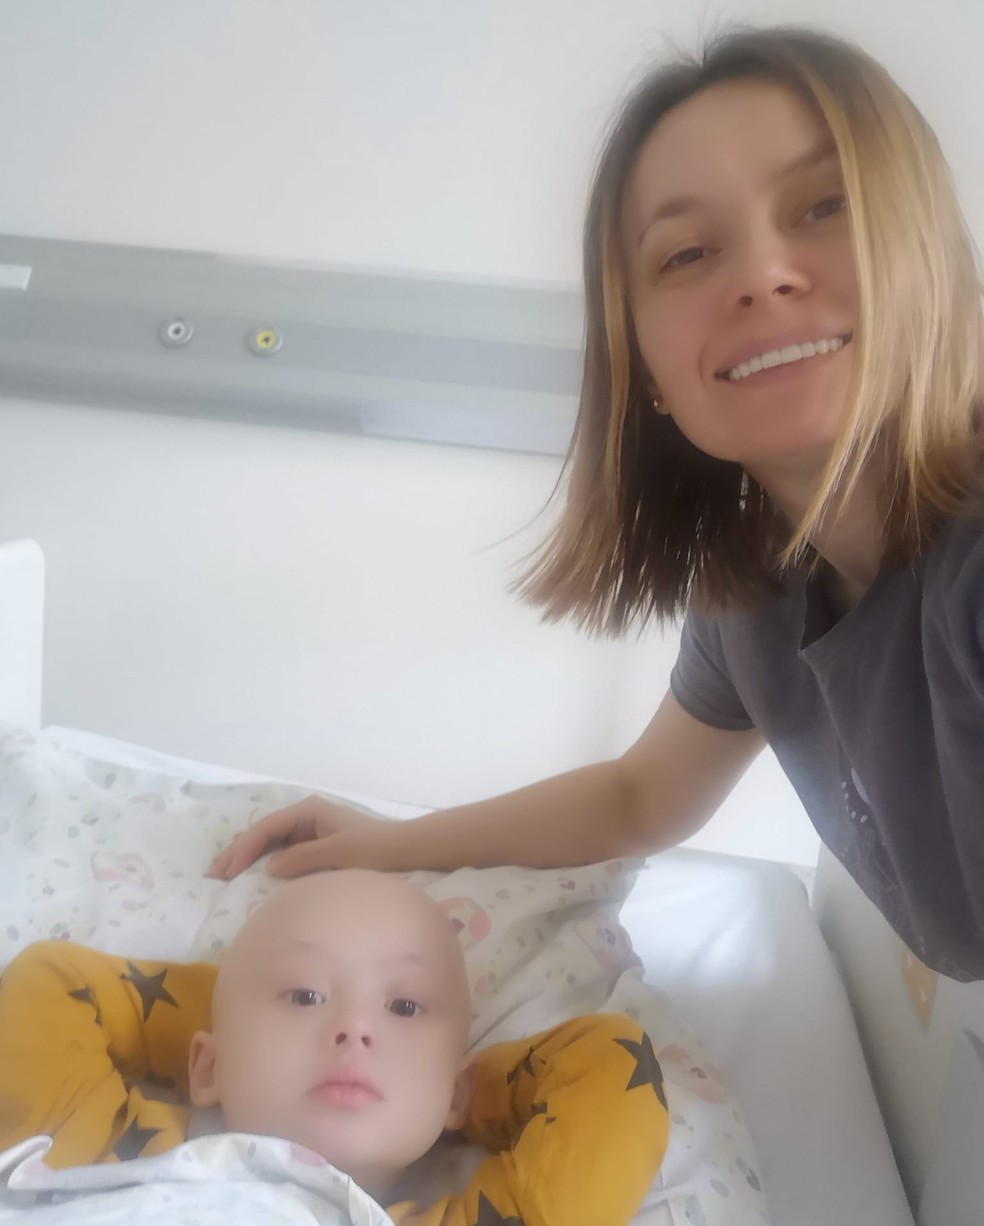 asomadetodosafetos.com - Mãe e bebê de 4 anos com câncer e Síndrome de Down fogem da guerra sem recursos: "Muito difícil"